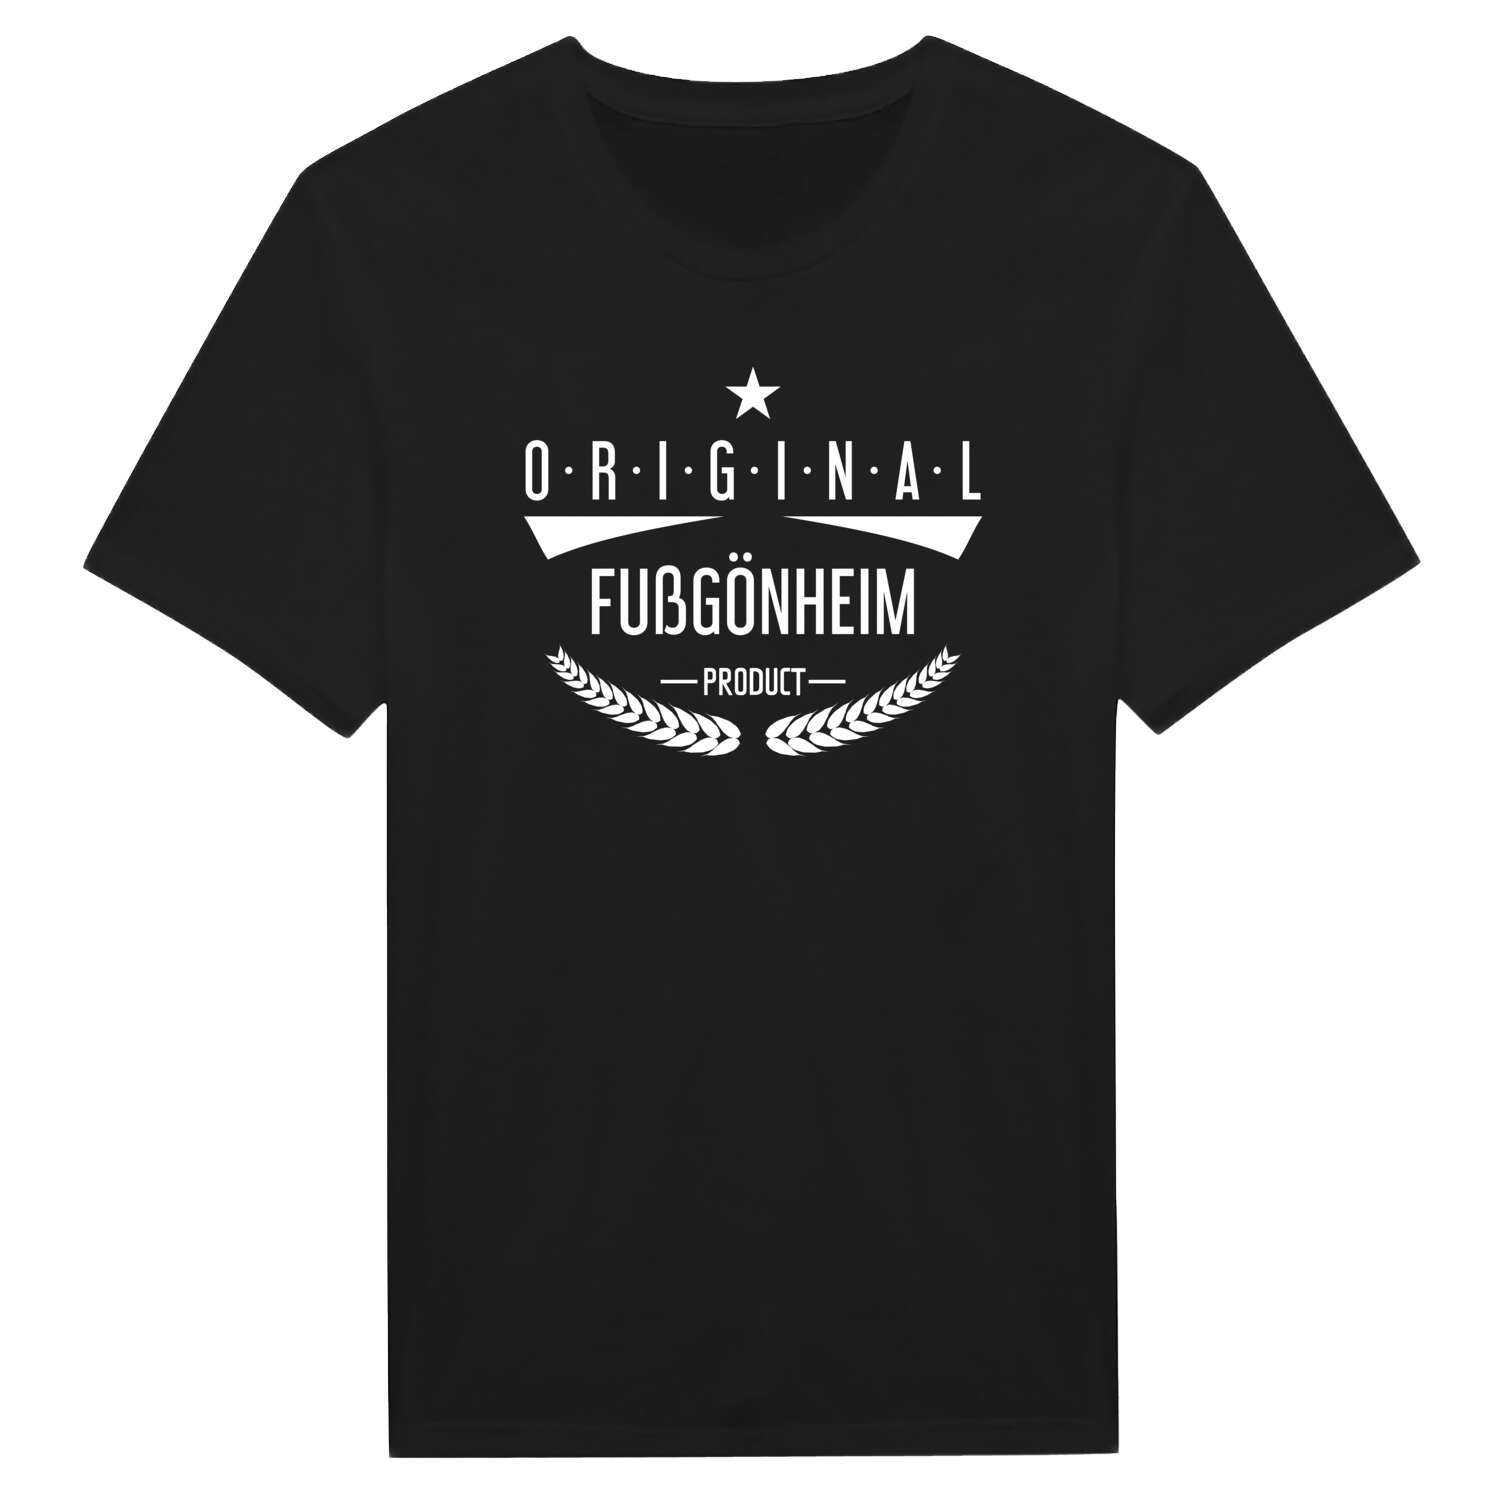 Fußgönheim T-Shirt »Original Product«